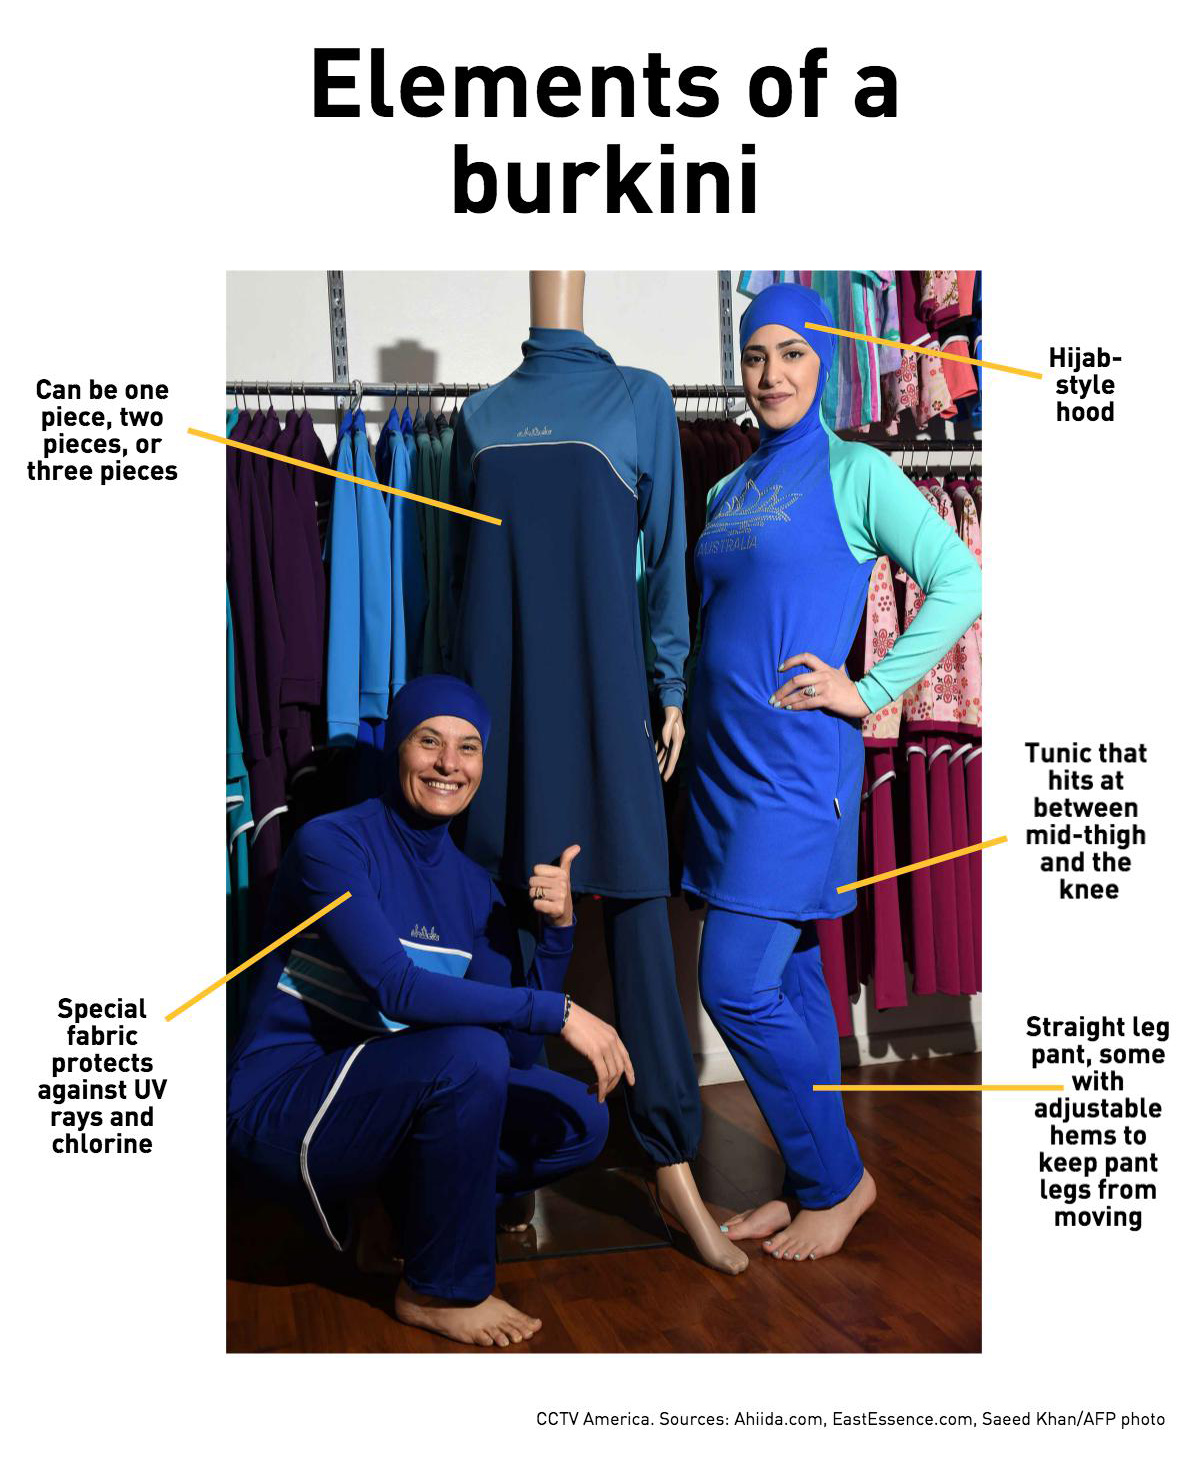 Elements of a burkini